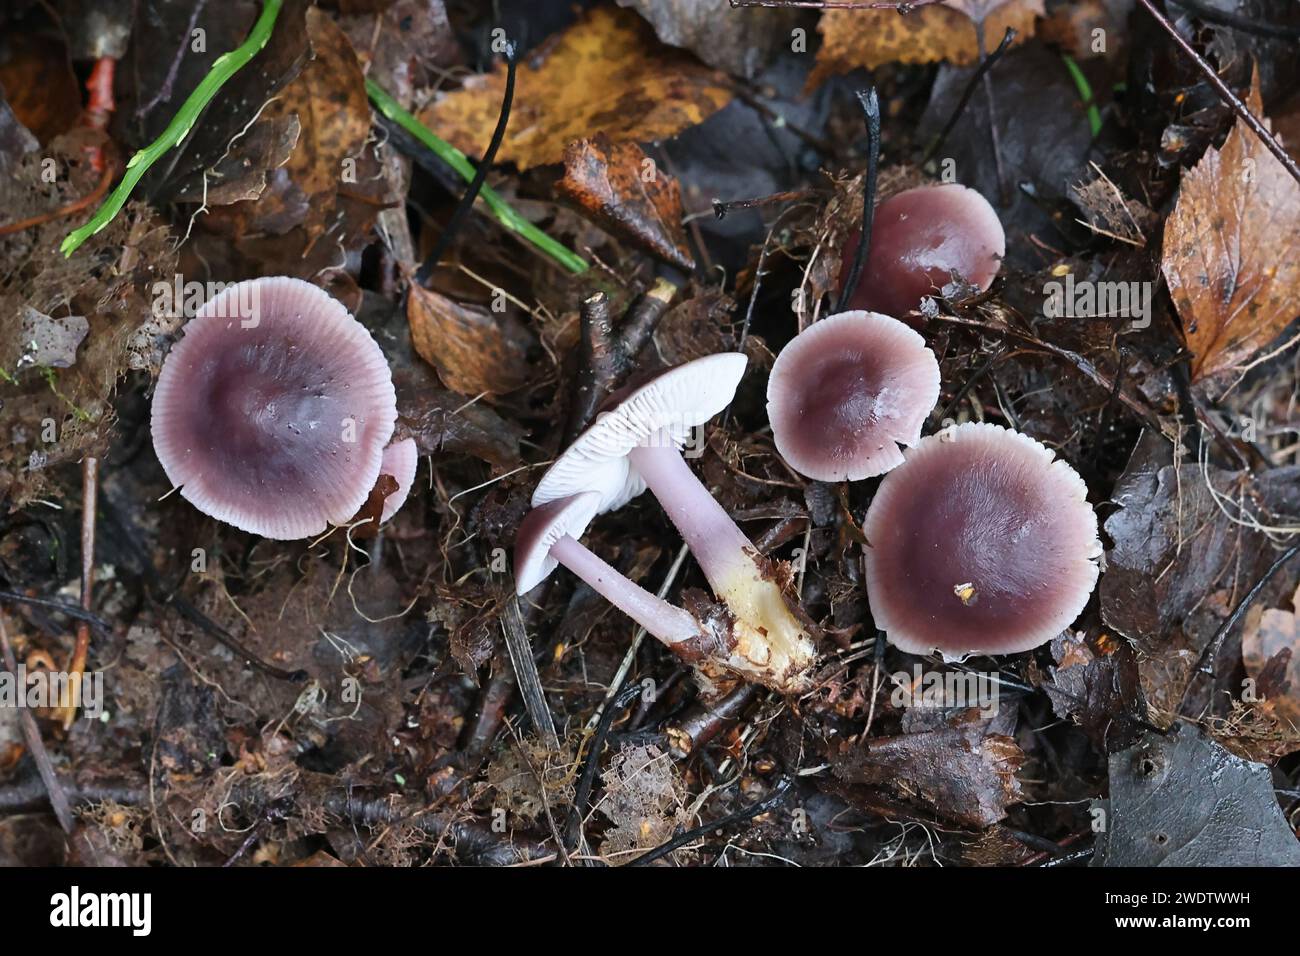 Mycena pura, connu sous le nom de bonnet lilas, champignon sauvage toxique de Finlande Banque D'Images